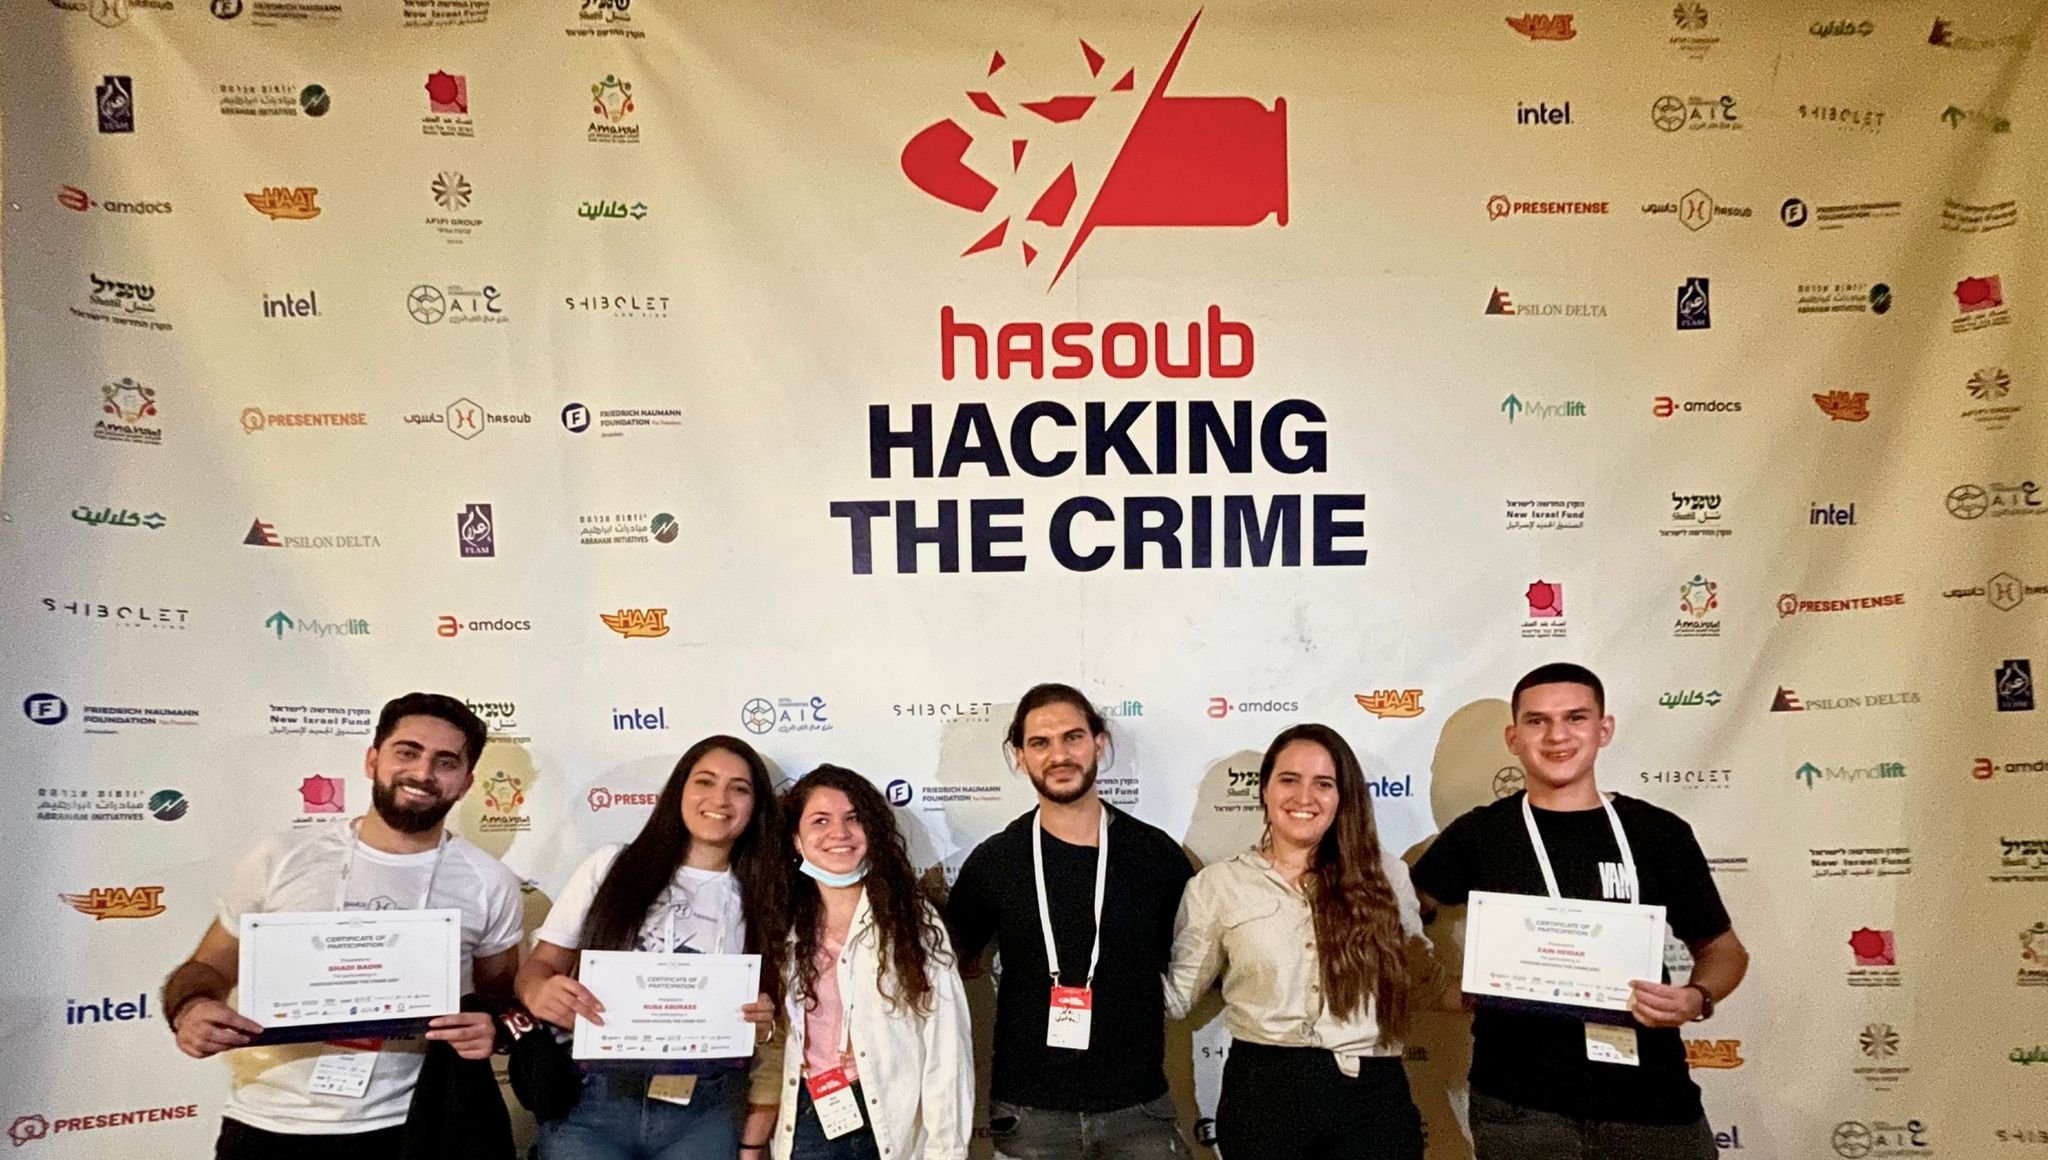 شباب وصبايا عرب يجندون التكنولوجيا والبرمجيات لمحاربة ظاهرة العنف والجريمة المنظمة-1